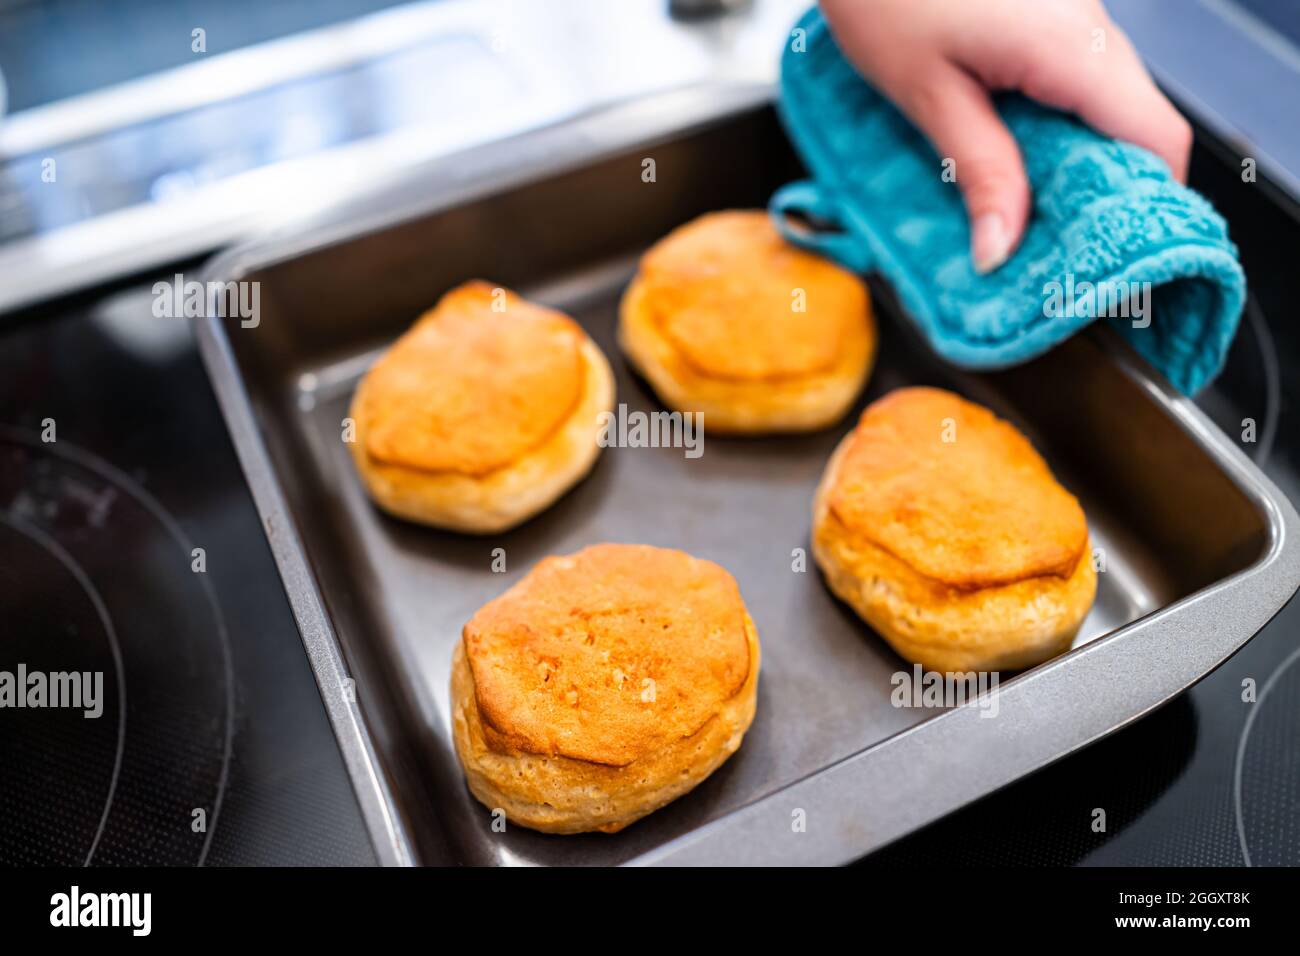 Vassoio appena sfornato che serve biscotti al latticello con guanto a mano e al forno dopo la cottura per la colazione tradizionale del sud del mattino Foto Stock